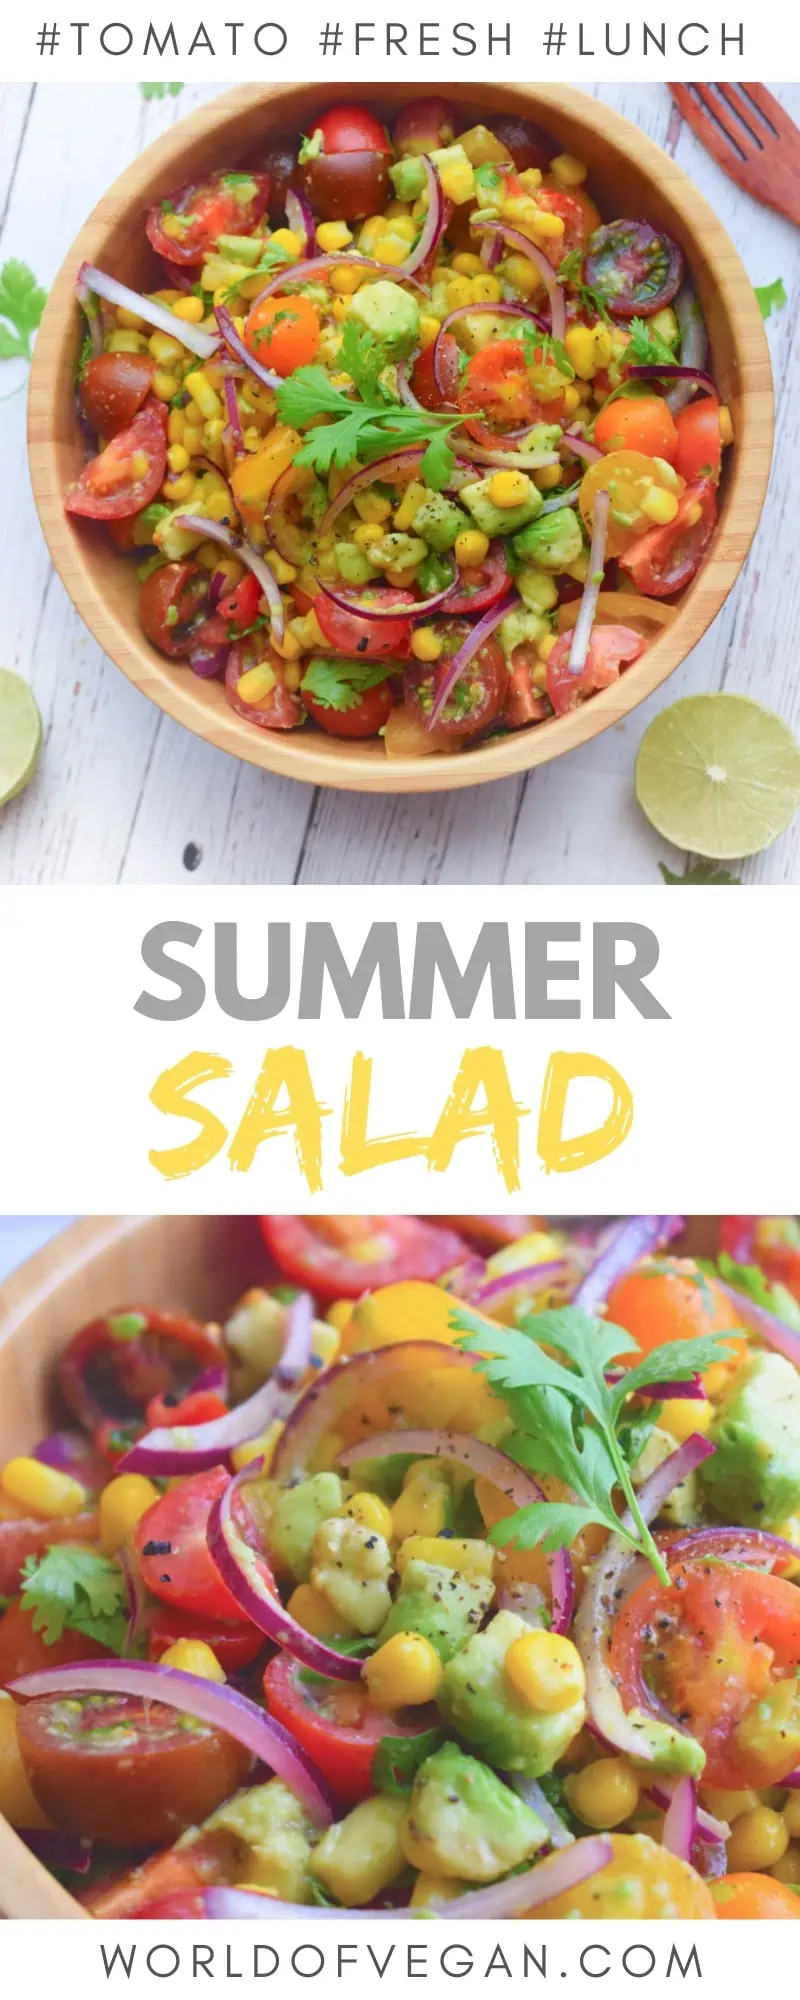 Fresh Summer Tomato Salad Recipe | Easy Vegan Side | World of Vegan | #summer #salad #tomato #avocado #fresh #worldofvegan